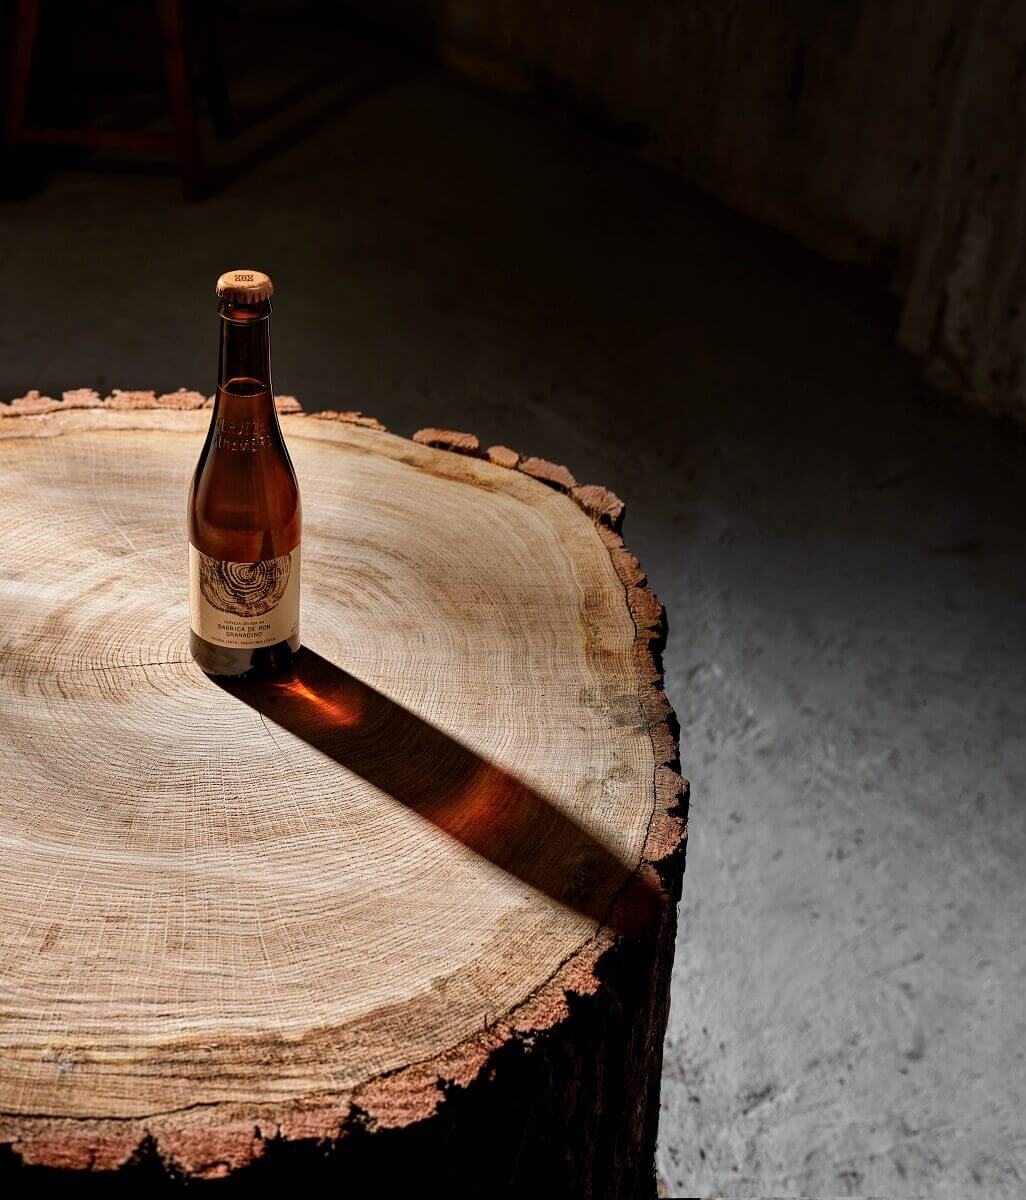 Una cerveza criada en barrica de ron granadino: así es la nueva Lenta de Cervezas Alhambra